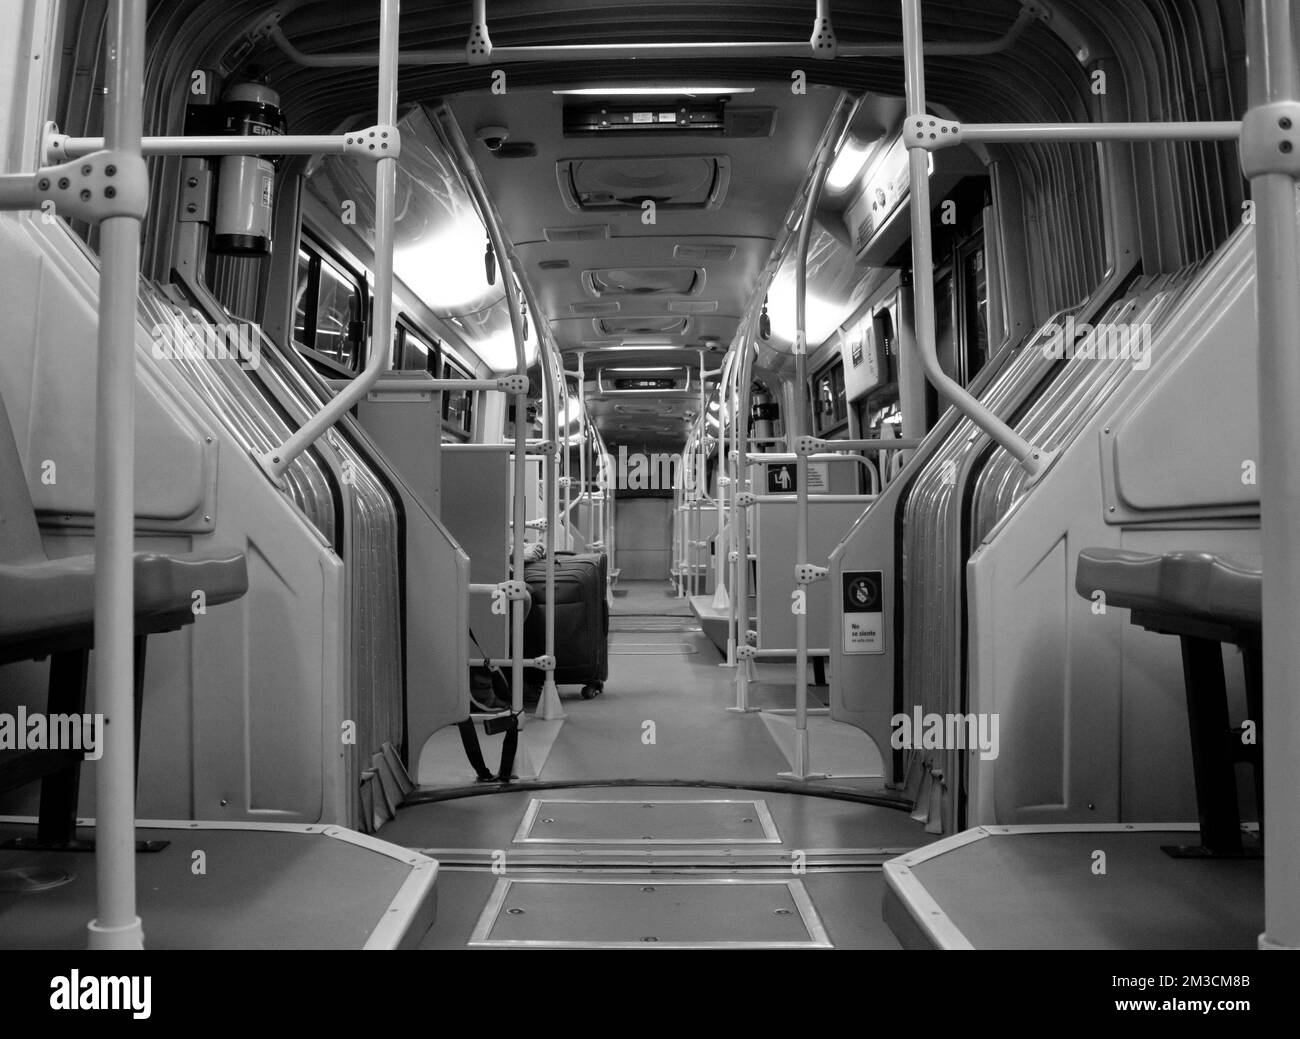 BOGOTA, COLOMBIE - Un bus transmilenio à l'intérieur à minuit avec une personne avec un sac de voyage. Photographie en noir et blanc Banque D'Images